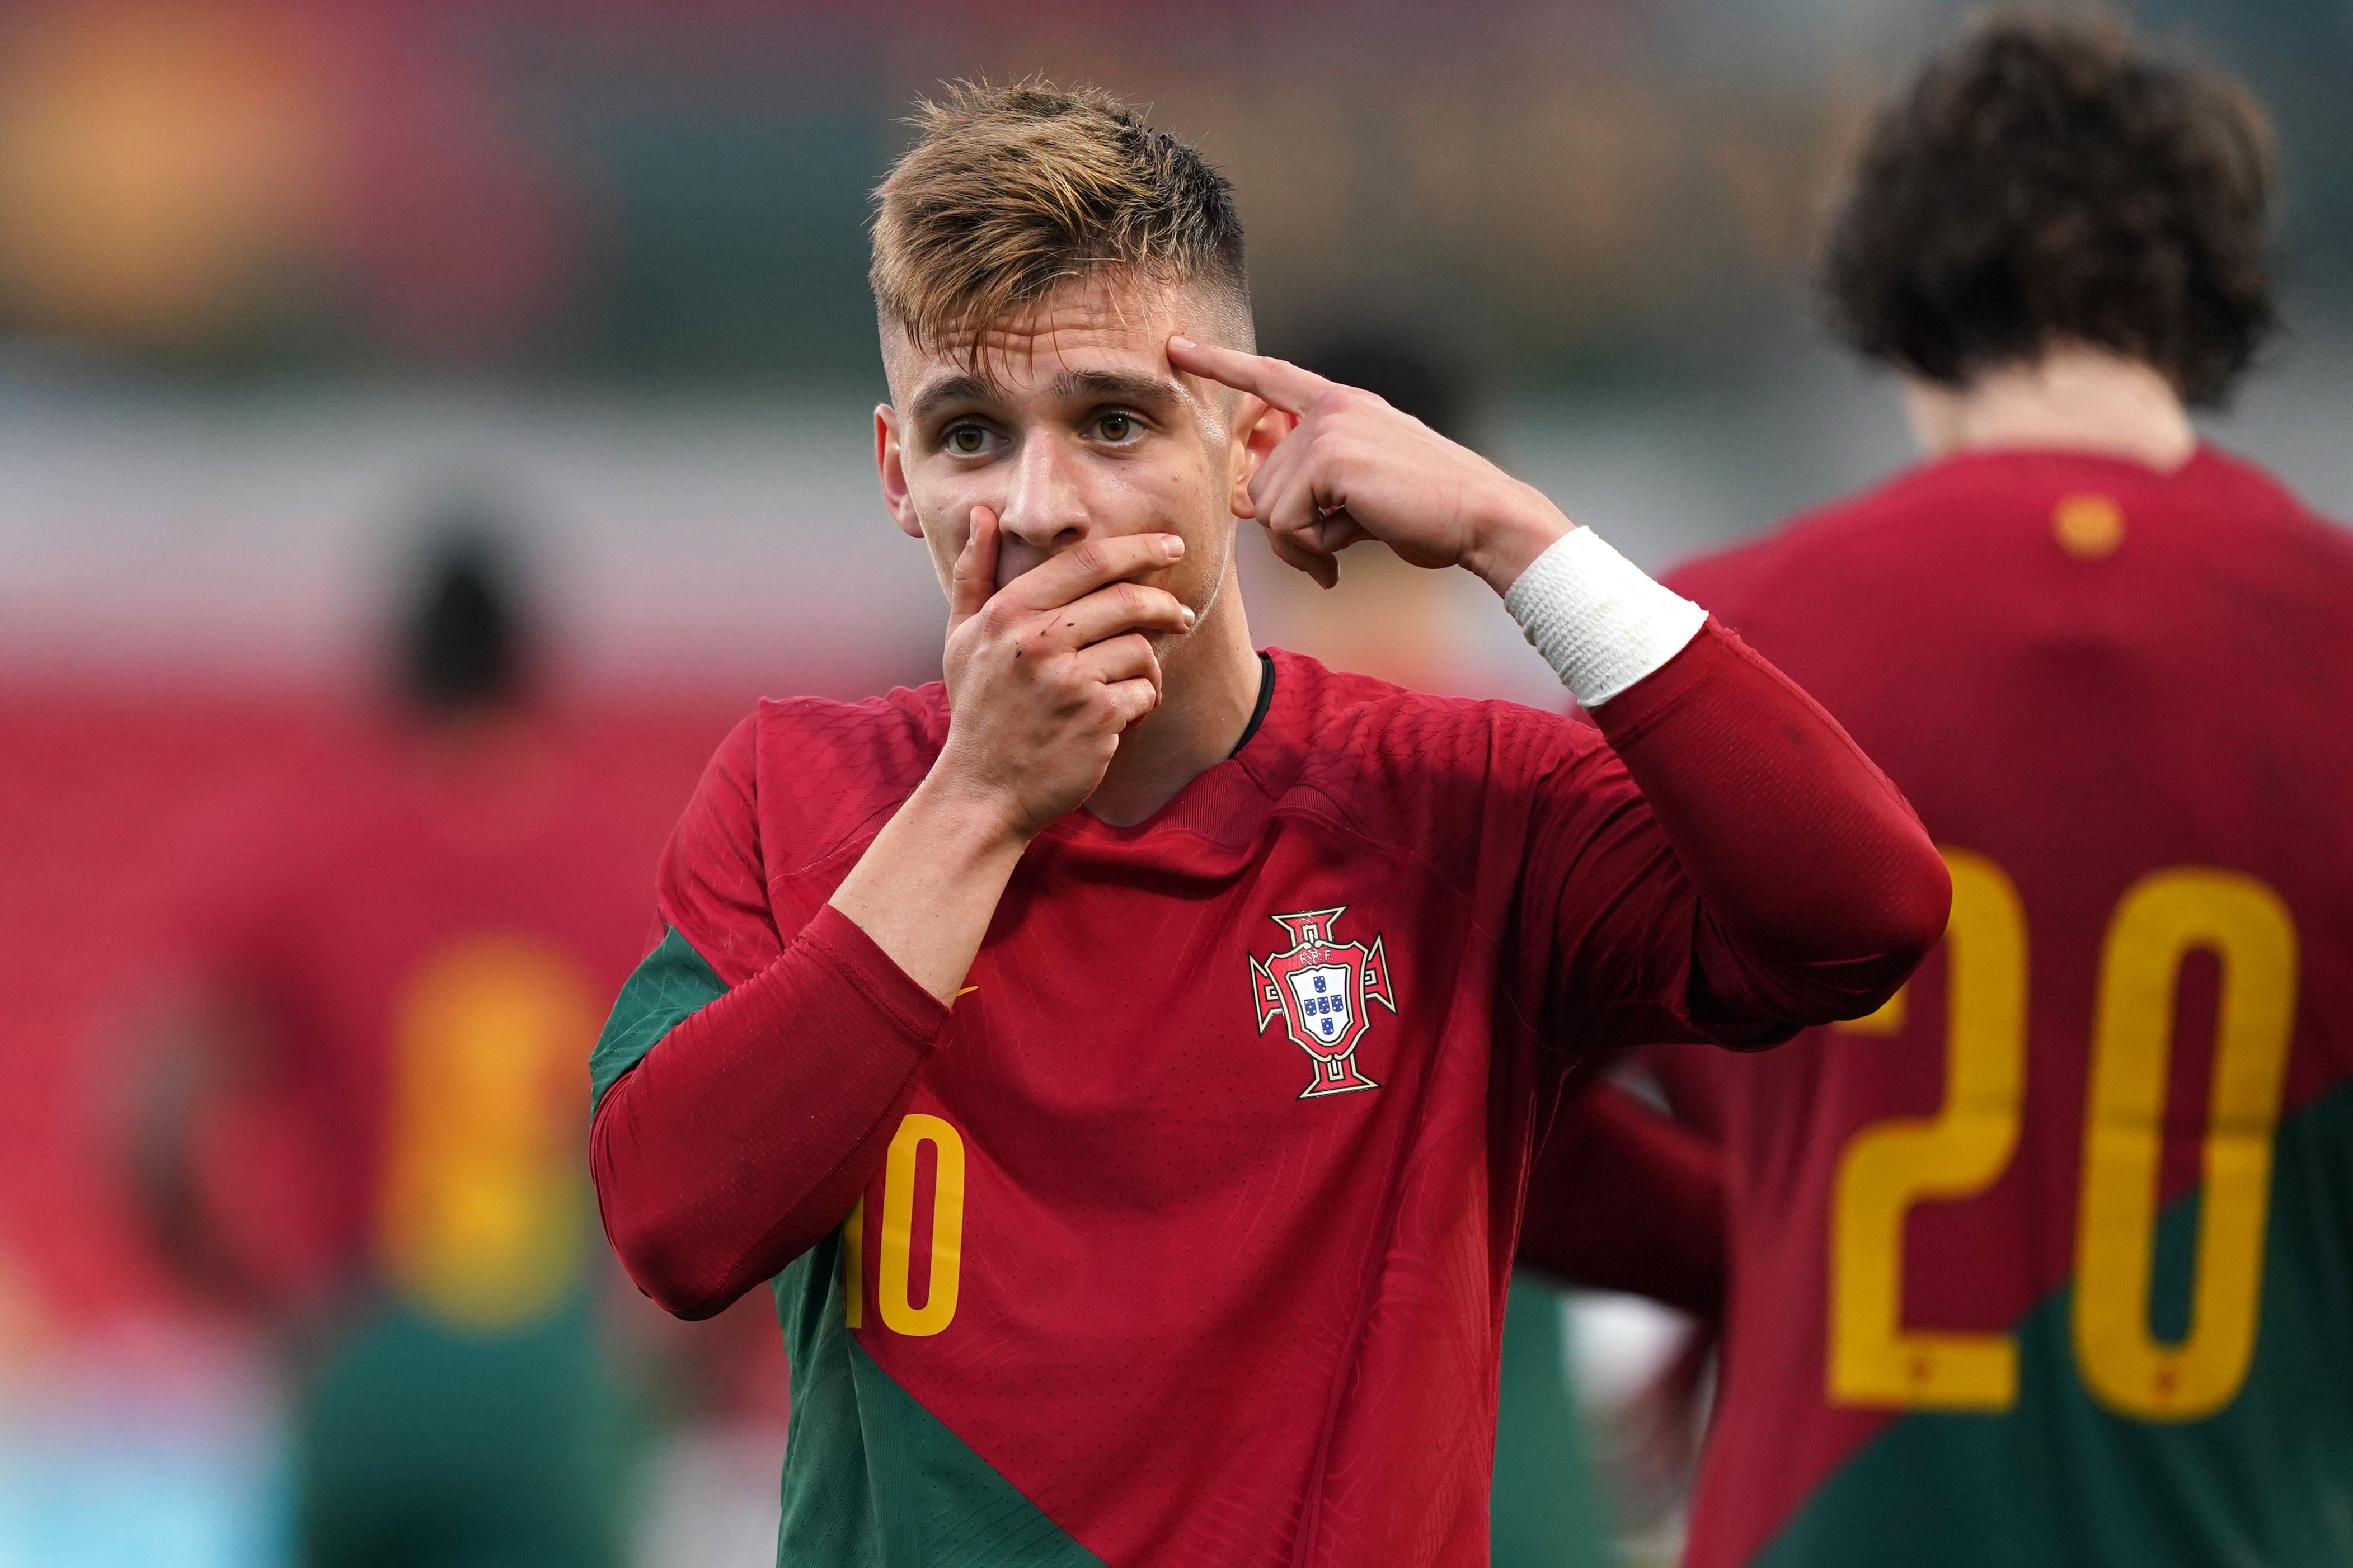 Seleções de Portugal - Goleada de Portugal e seguimos sem derrotas